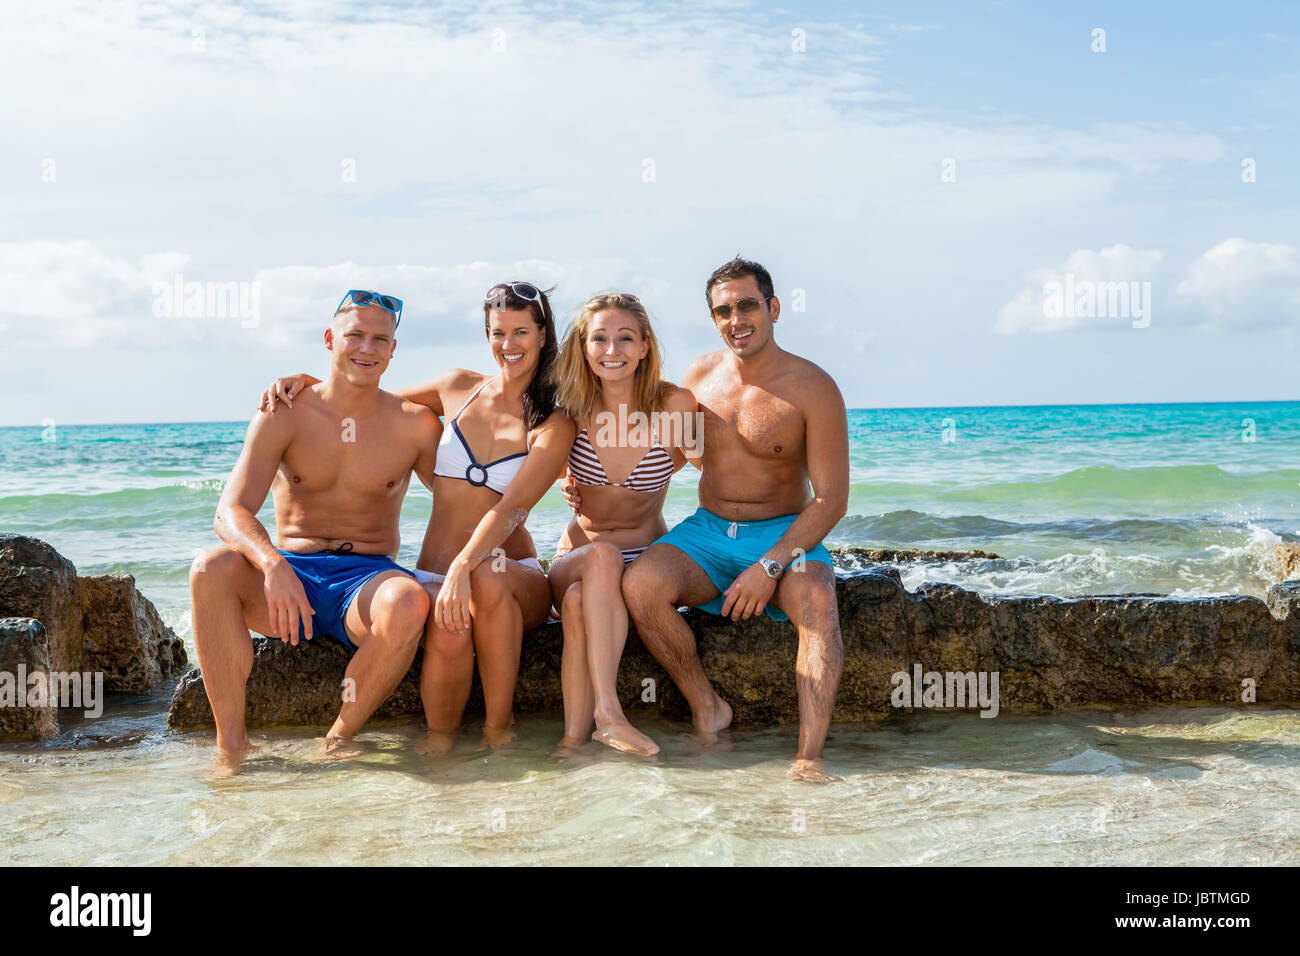 Gruppe lachender junger leute am Strand im sommer urlaub freizeit lifestyle Foto Stock